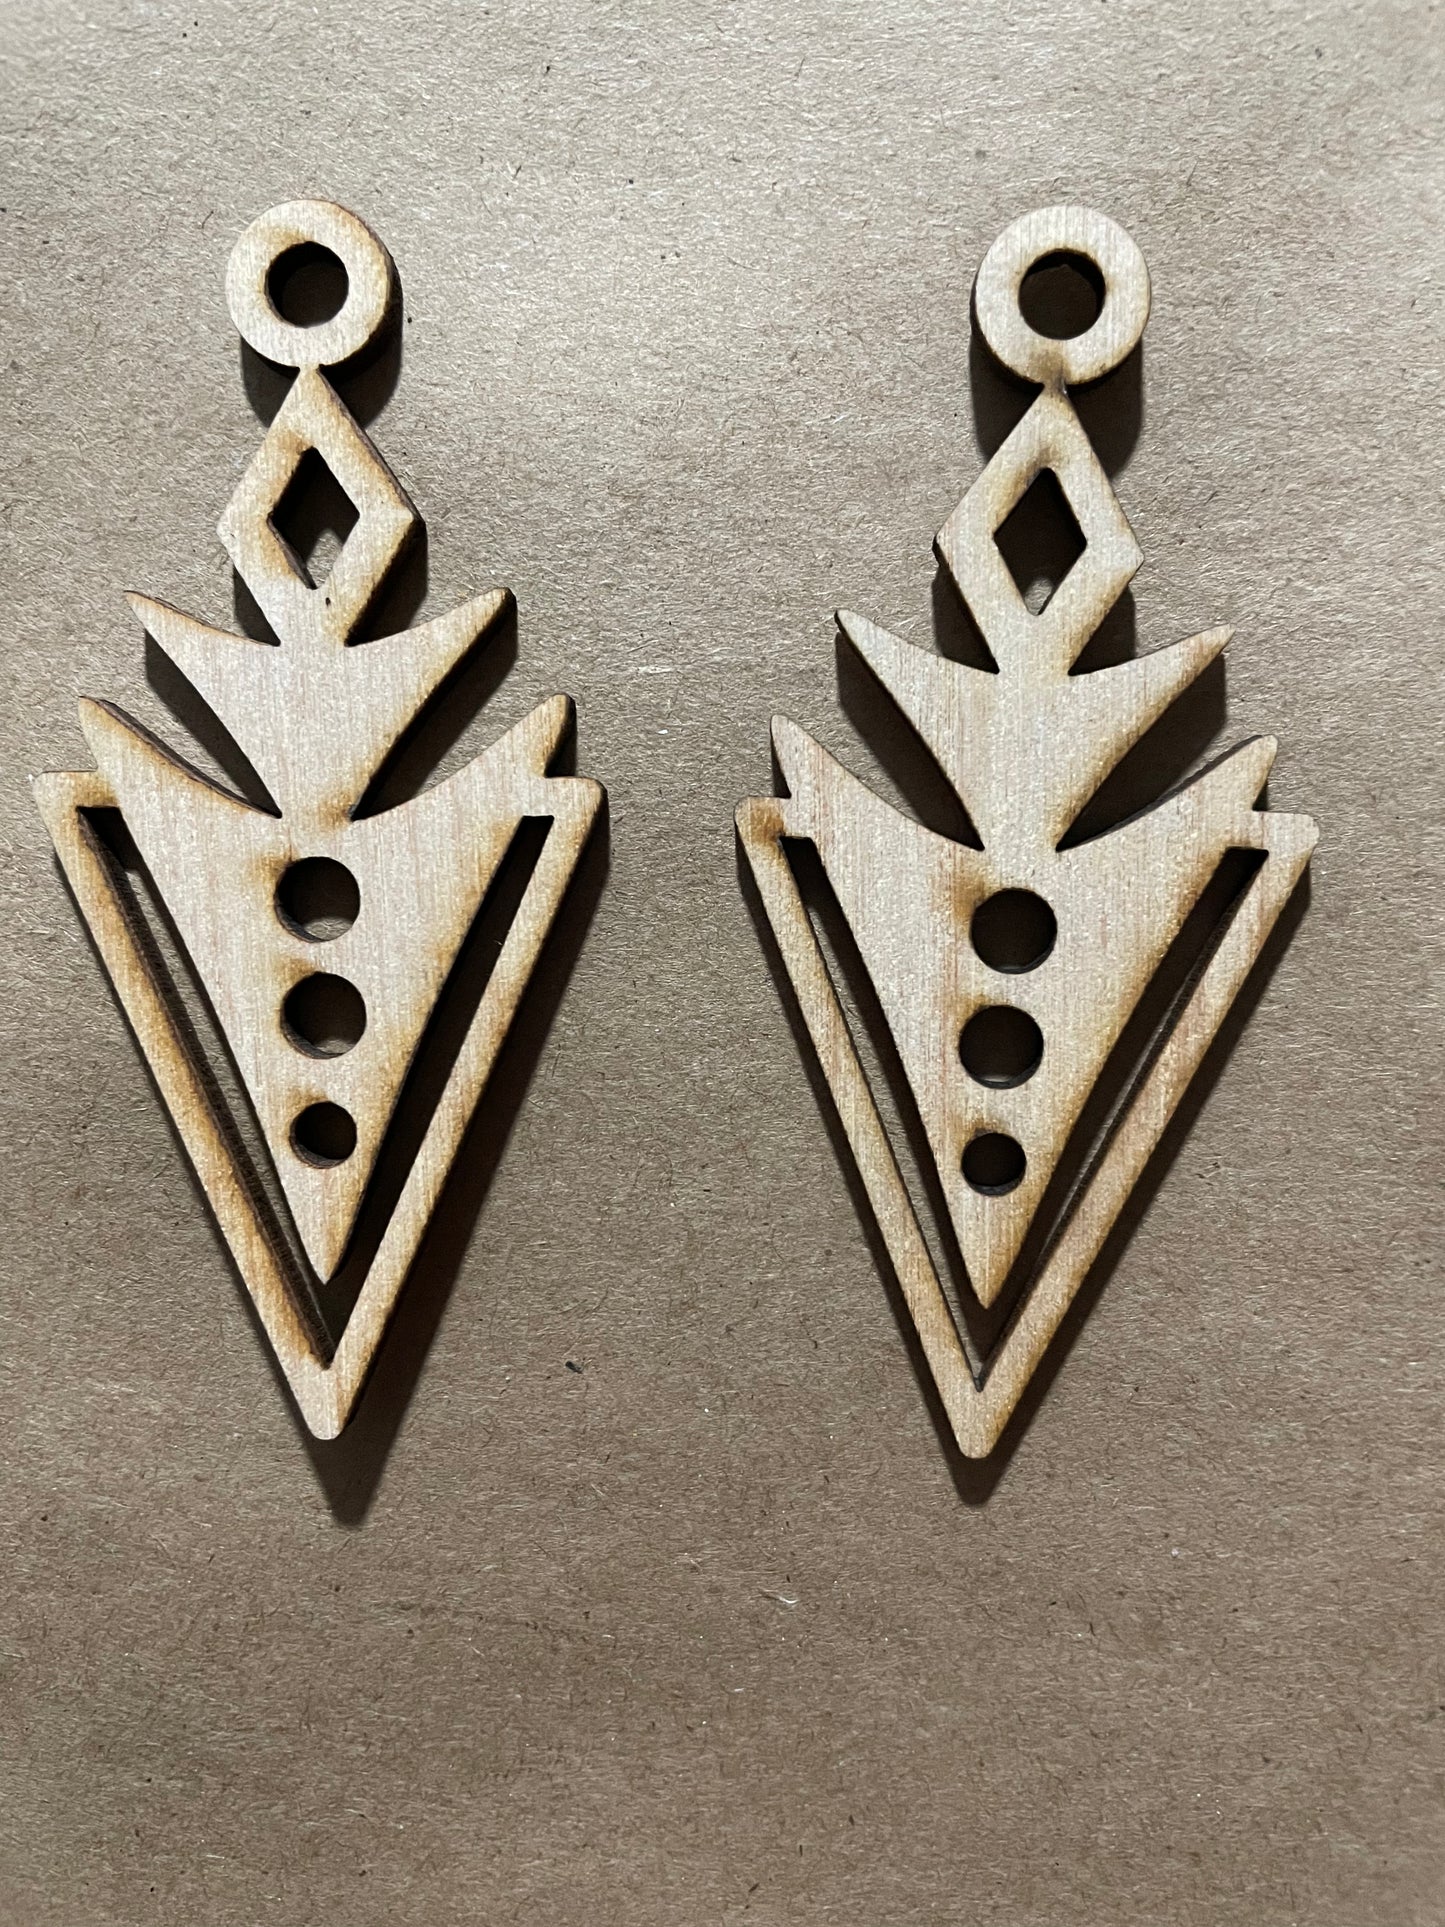 Arrow Blank Wood Earrings. DIY jewelry. Unfinished laser cut wood jewelry. Wood earring blanks. Unfinished wood earrings. Wood jewelry blanks.